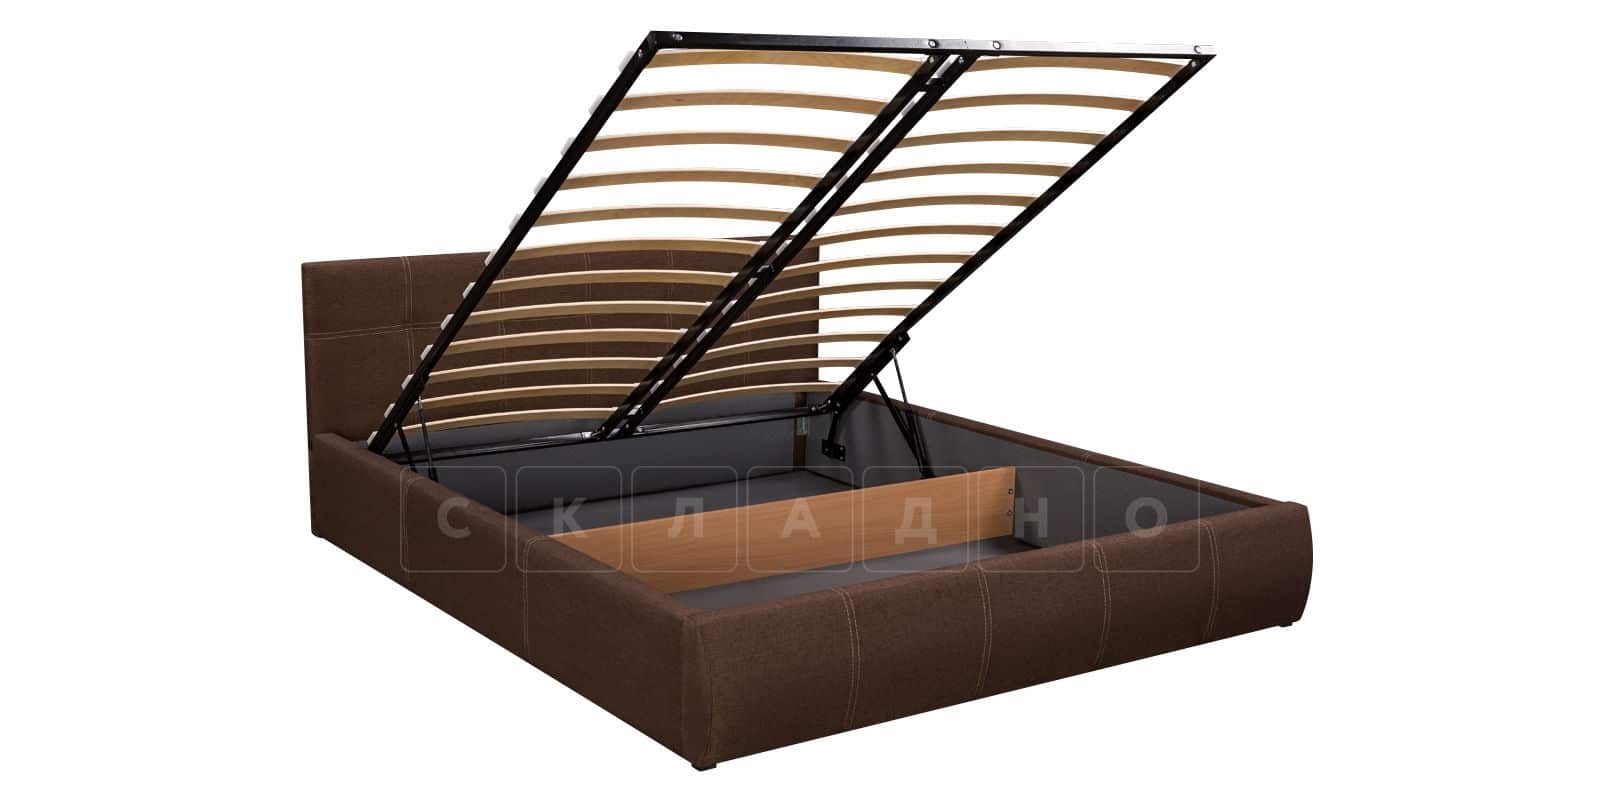 Мягкая кровать Афина 160 см рогожка коричневого цвета фото 6 | интернет-магазин Складно